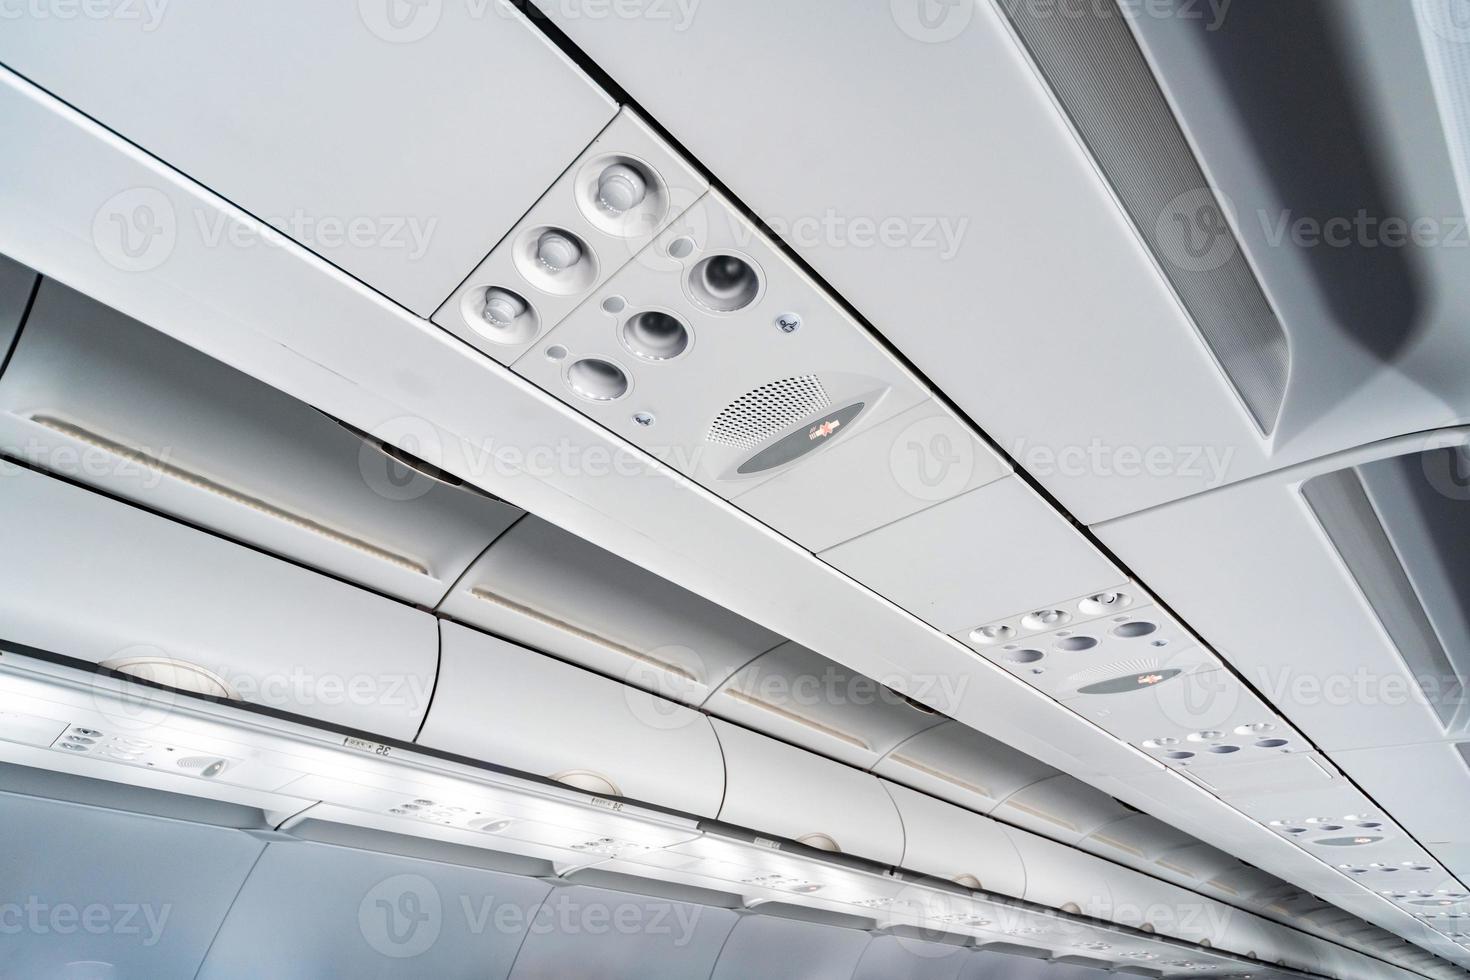 vliegtuig airconditioning bedieningspaneel over stoelen, benauwde lucht in vliegtuigcabine met mensen, nieuwe goedkope luchtvaartmaatschappij foto